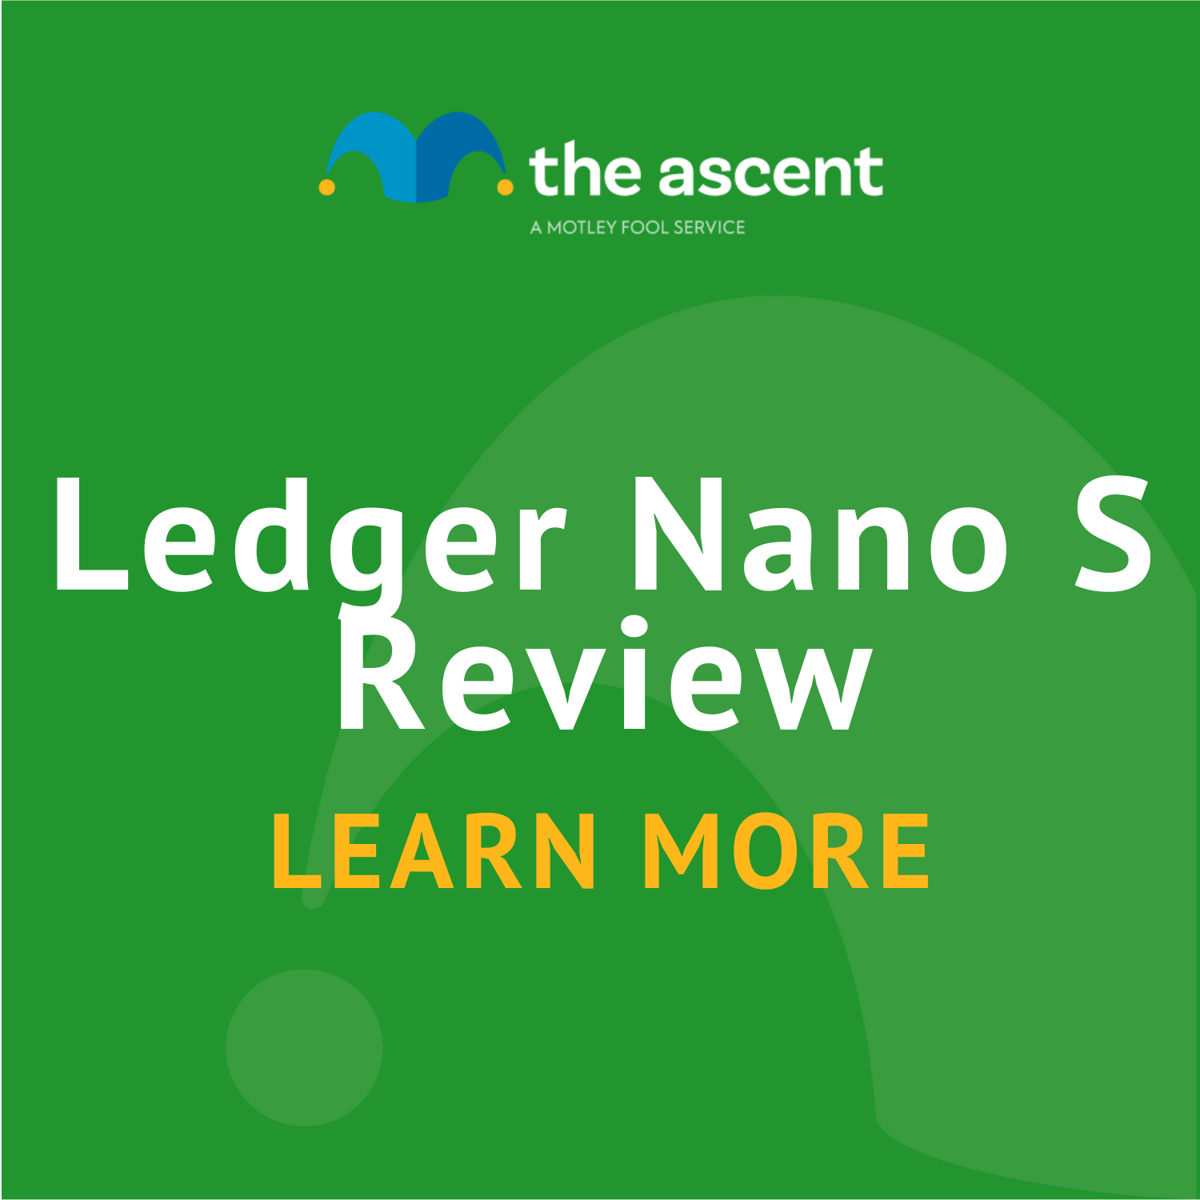 Ledger Nano S: Guide For Beginners